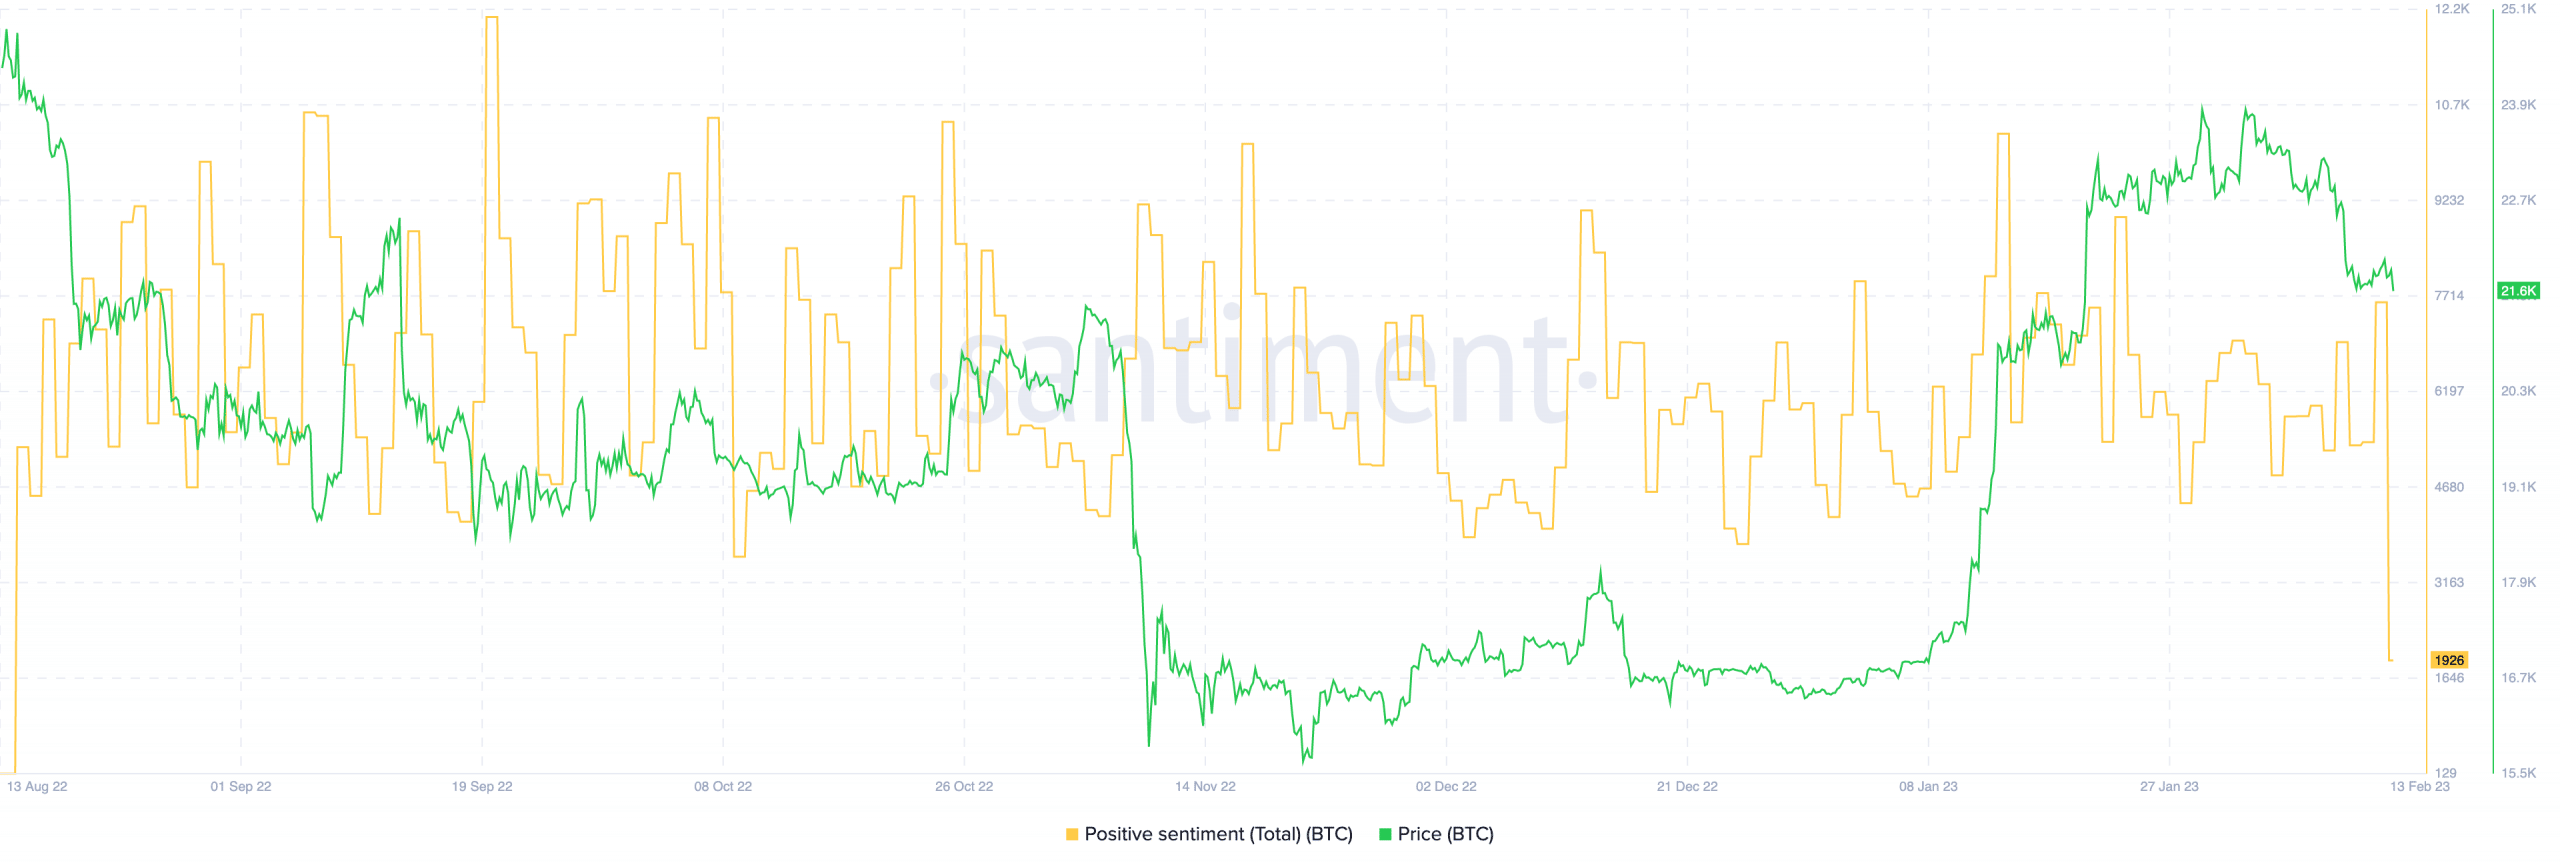 Preço do BTC e sentimento positivo do Bitcoin